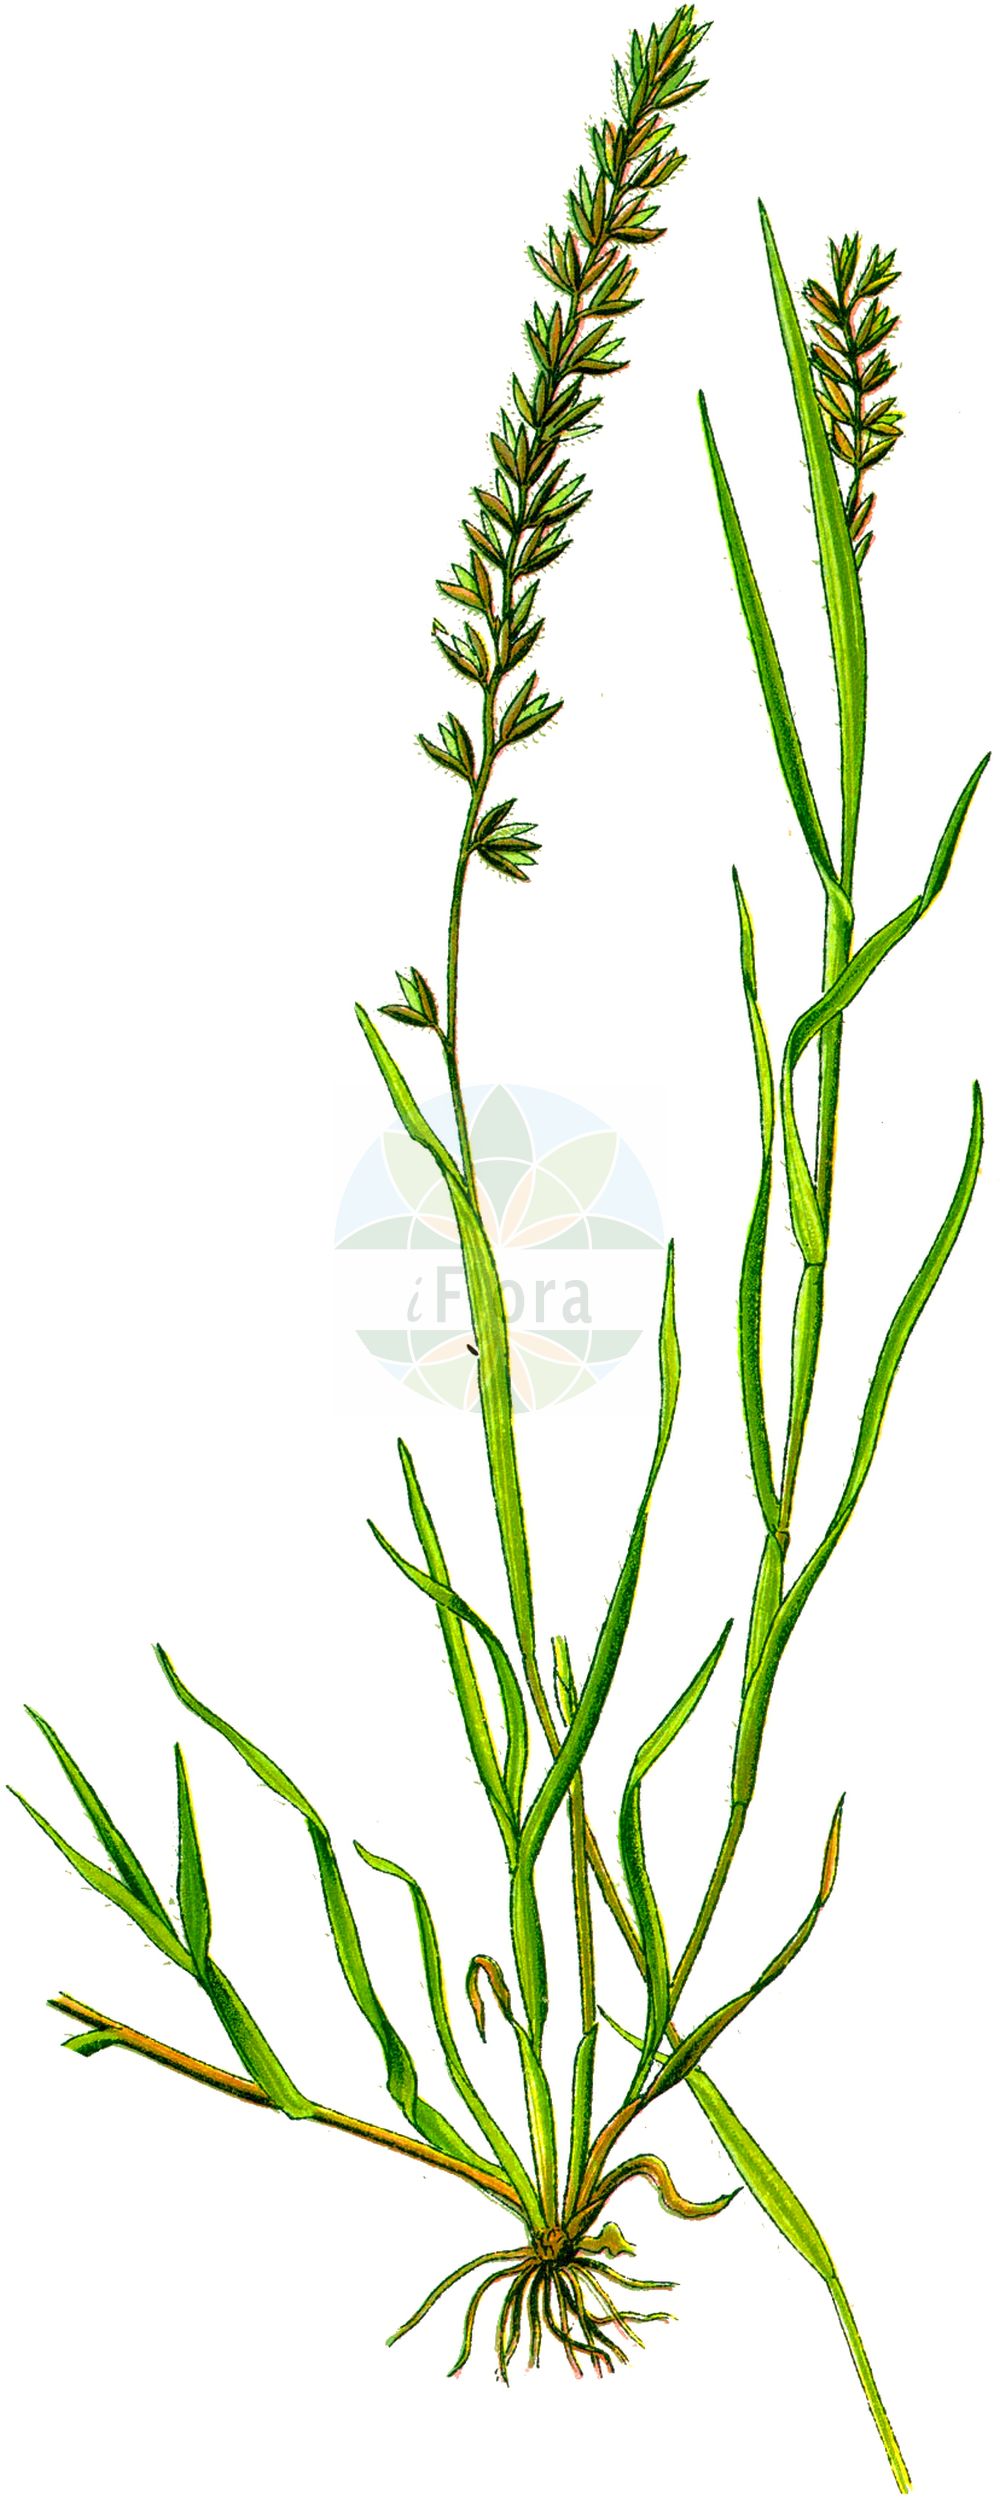 Historische Abbildung von Tragus racemosus (Traubiges Klettengras - European Bur-grass). Das Bild zeigt Blatt, Bluete, Frucht und Same. ---- Historical Drawing of Tragus racemosus (Traubiges Klettengras - European Bur-grass). The image is showing leaf, flower, fruit and seed.(Tragus racemosus,Traubiges Klettengras,European Bur-grass,Cenchrus racemosus,Lappago racemosus,Nazia racemosa,Tragus racemosus,Traubiges Klettengras,Gewoehnliches Klettengras,European Bur-grass,Large Carrot-seed Grass,Stalked Bristlegrass,Stalked Burgrass,Tragus,Klettengras,Bur Grass,Poaceae,Süßgräser,Grass family,Blatt,Bluete,Frucht,Same,leaf,flower,fruit,seed,Thomé (1885))